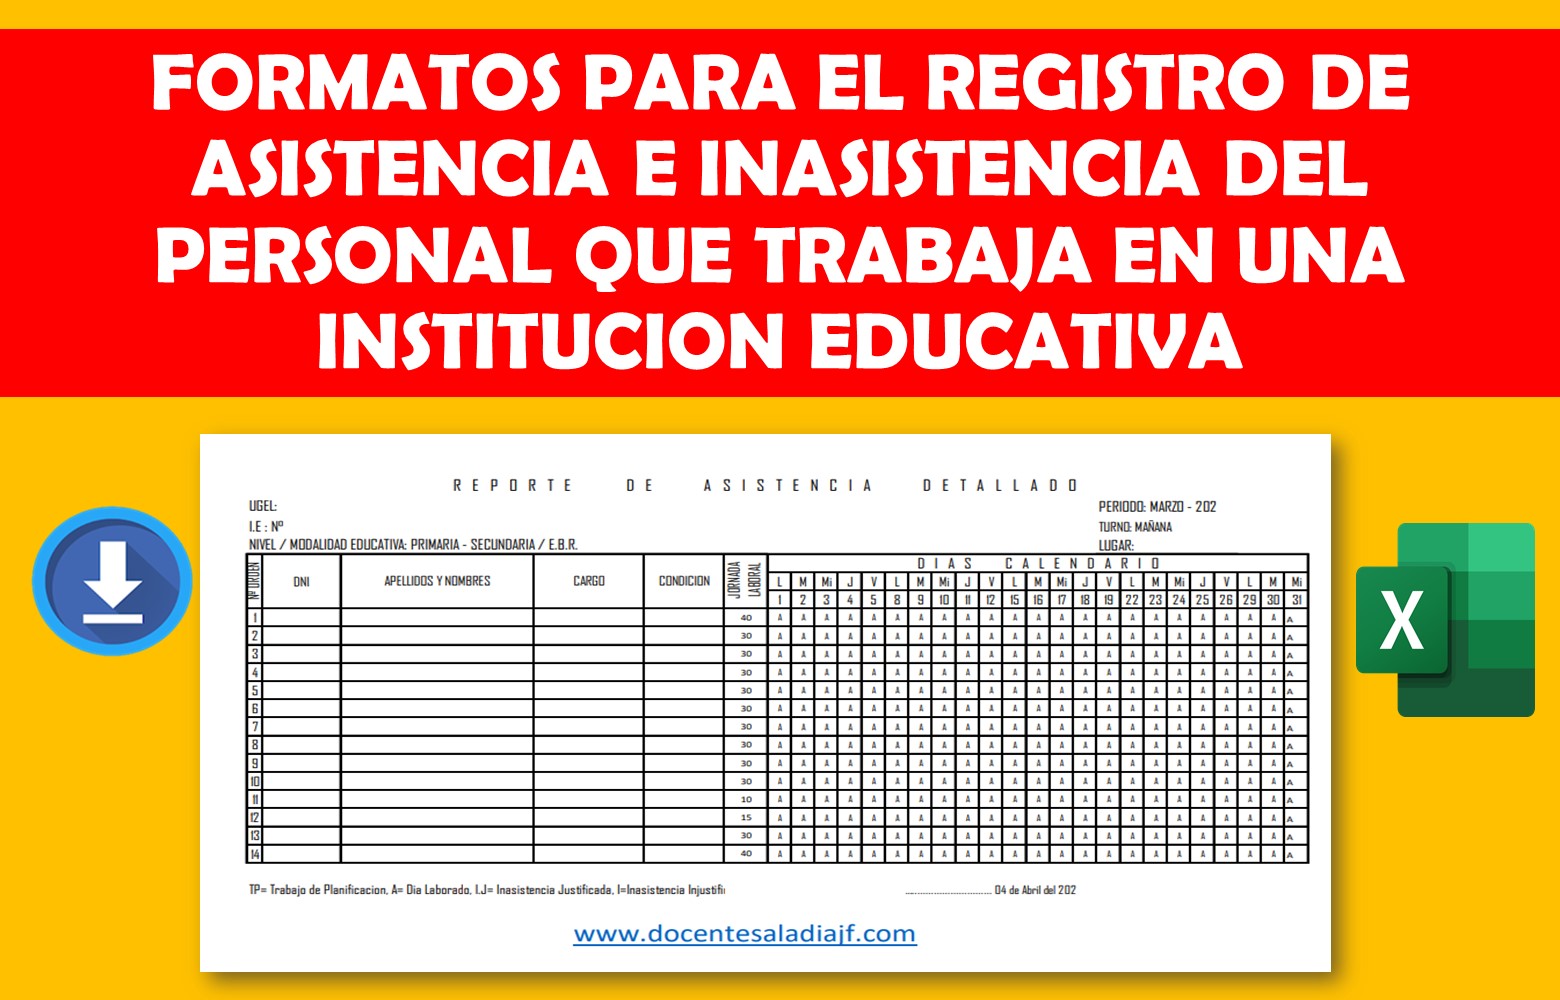 Formatos para el registro de asistencia e inasistencia del personal que  labora en una Institución Educativa - Docentes al Dia DJF